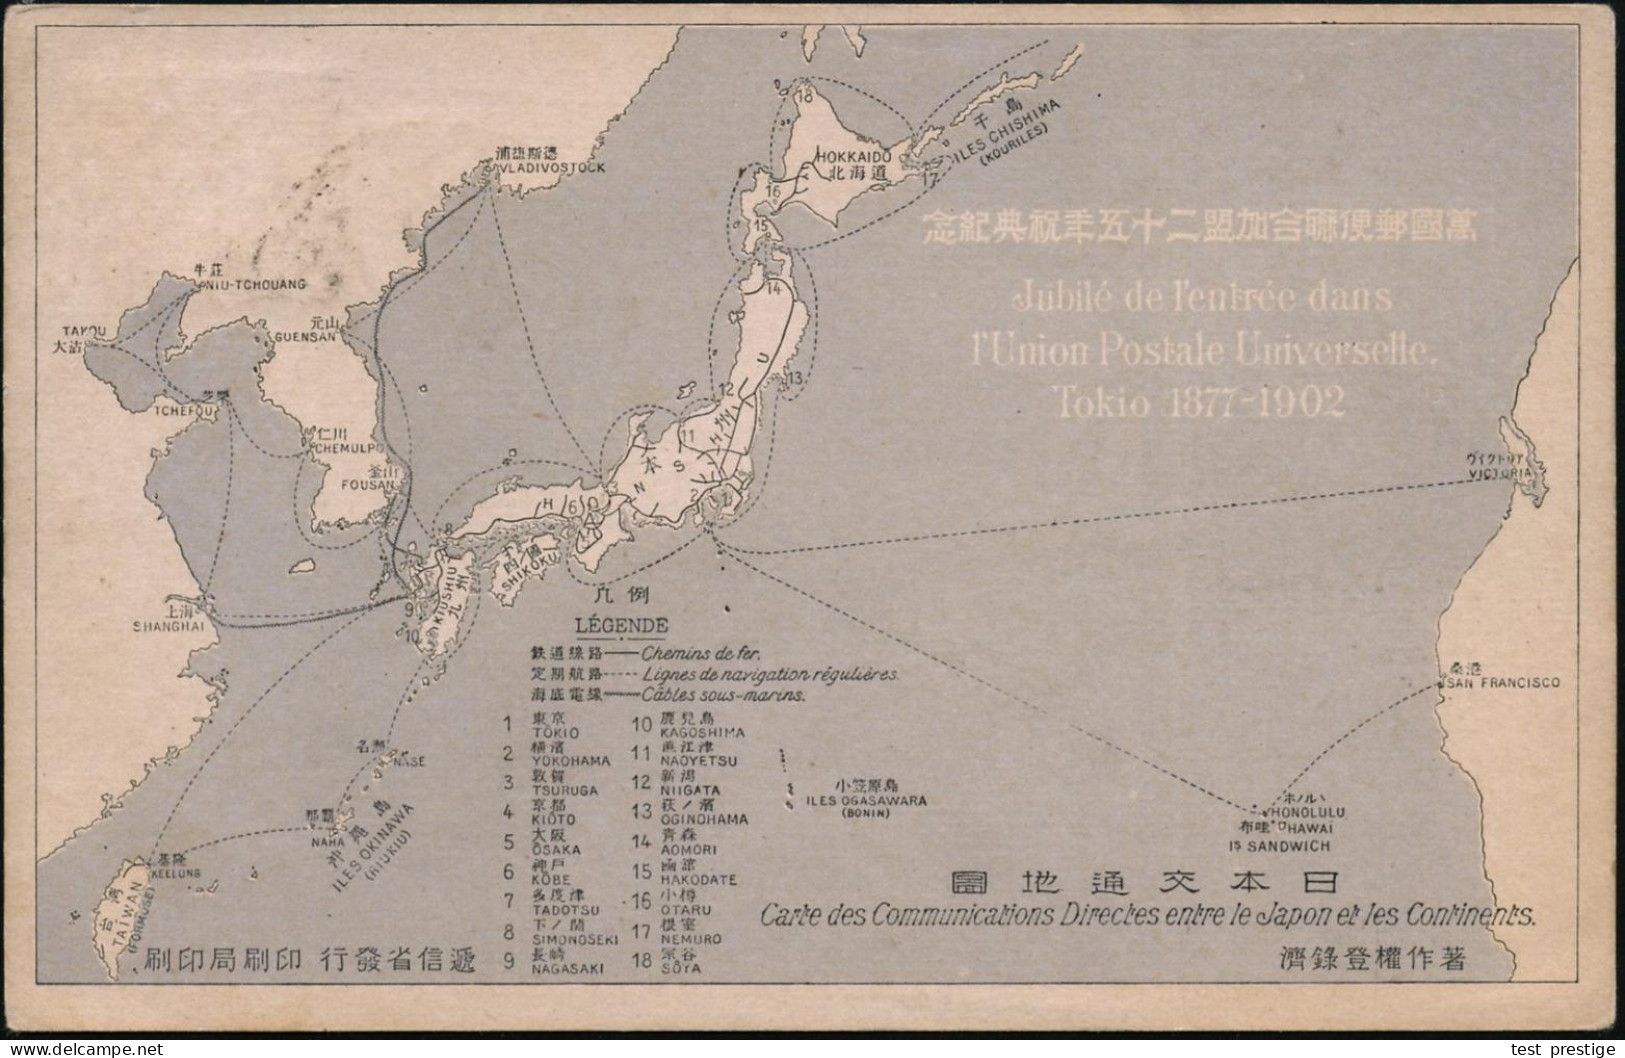 JAPAN 1902 Schw. SSt: YOKOHAMA/JUBILE DE L'ENTREE DANS/L'UNION POSTALE UNIVERSELLE TOKIO 1872 - 1902 (Flaggen) Sehr Selt - UPU (Union Postale Universelle)